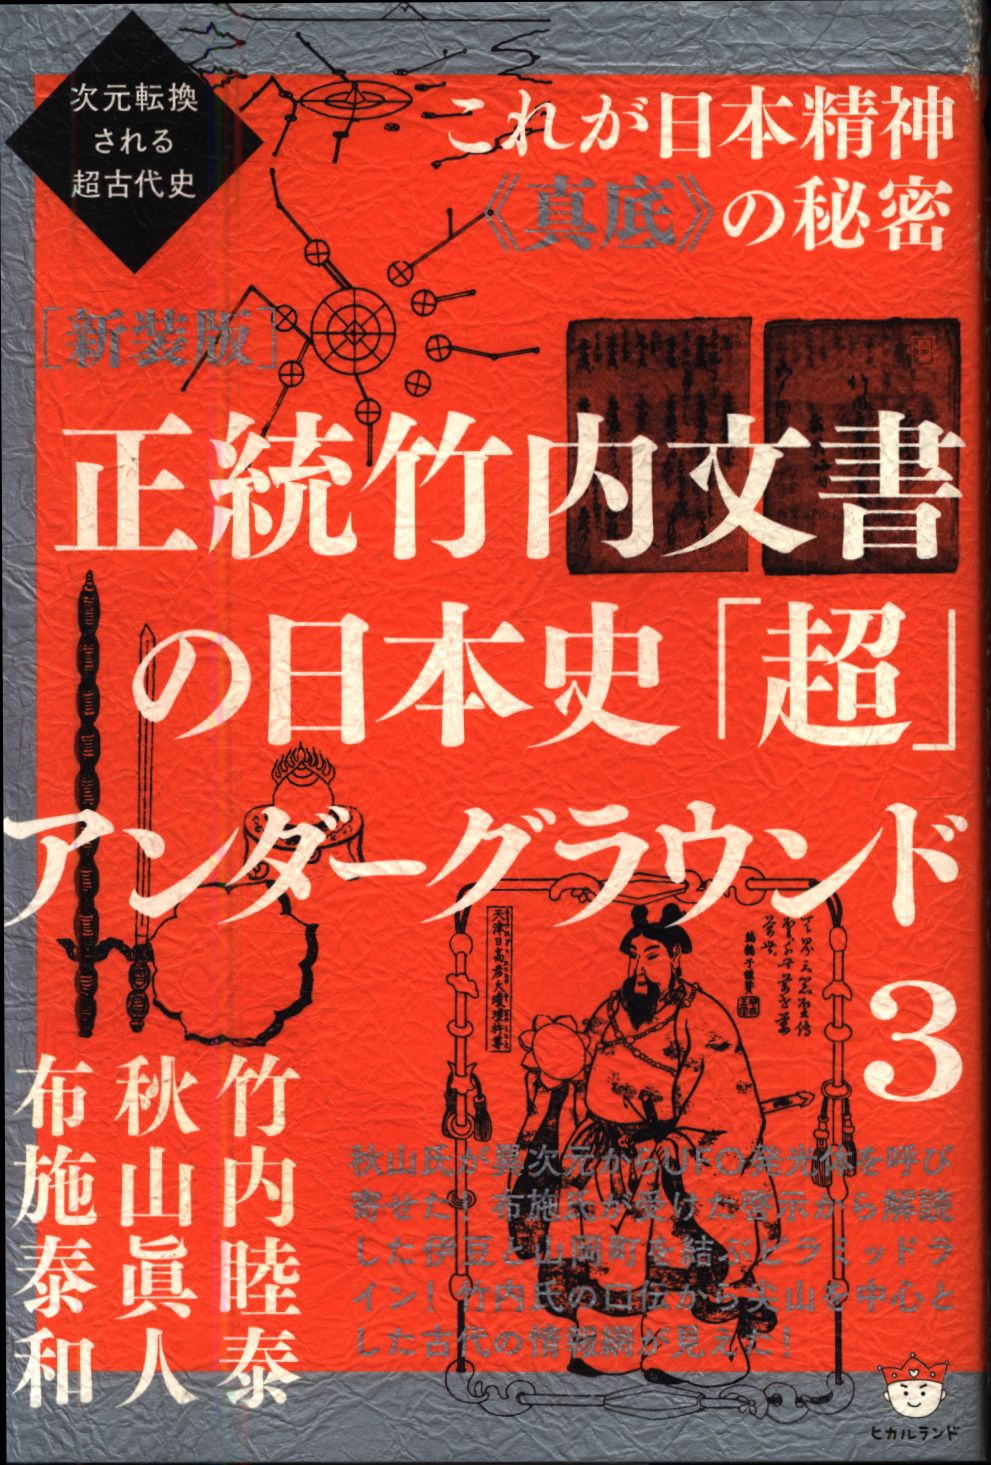 大量入荷 正統竹内文書の日本史「超」アンダーグラウンド 1 文学・小説 